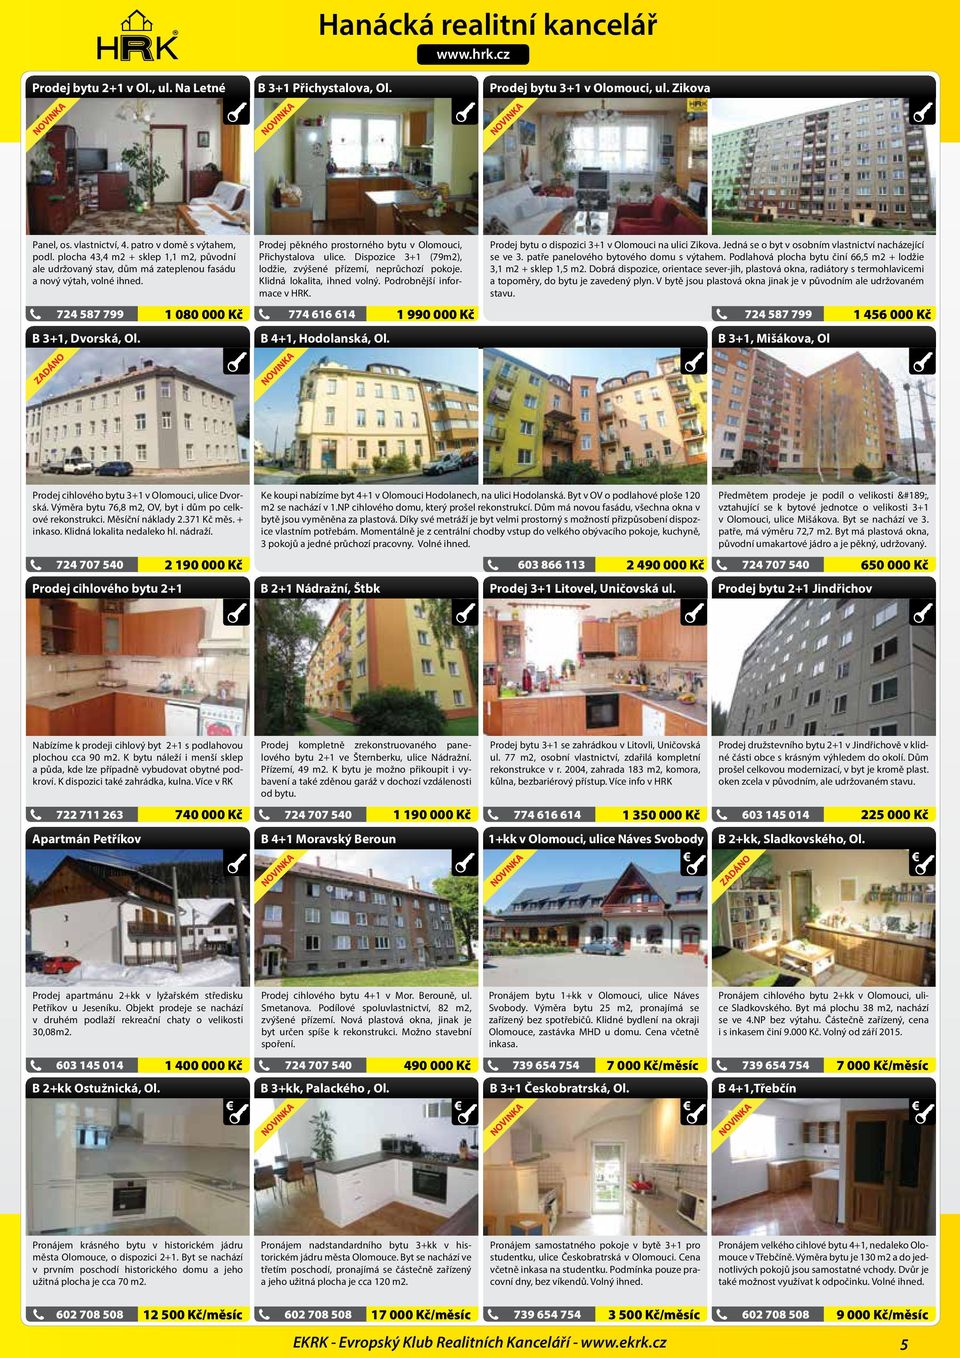 ZADÁNO 1 080 000 Kč Prodej pěkného prostorného bytu v Olomouci, Přichystalova ulice. Dispozice 3+1 (79m2), lodžie, zvýšené přízemí, neprůchozí pokoje. Klidná lokalita, ihned volný.